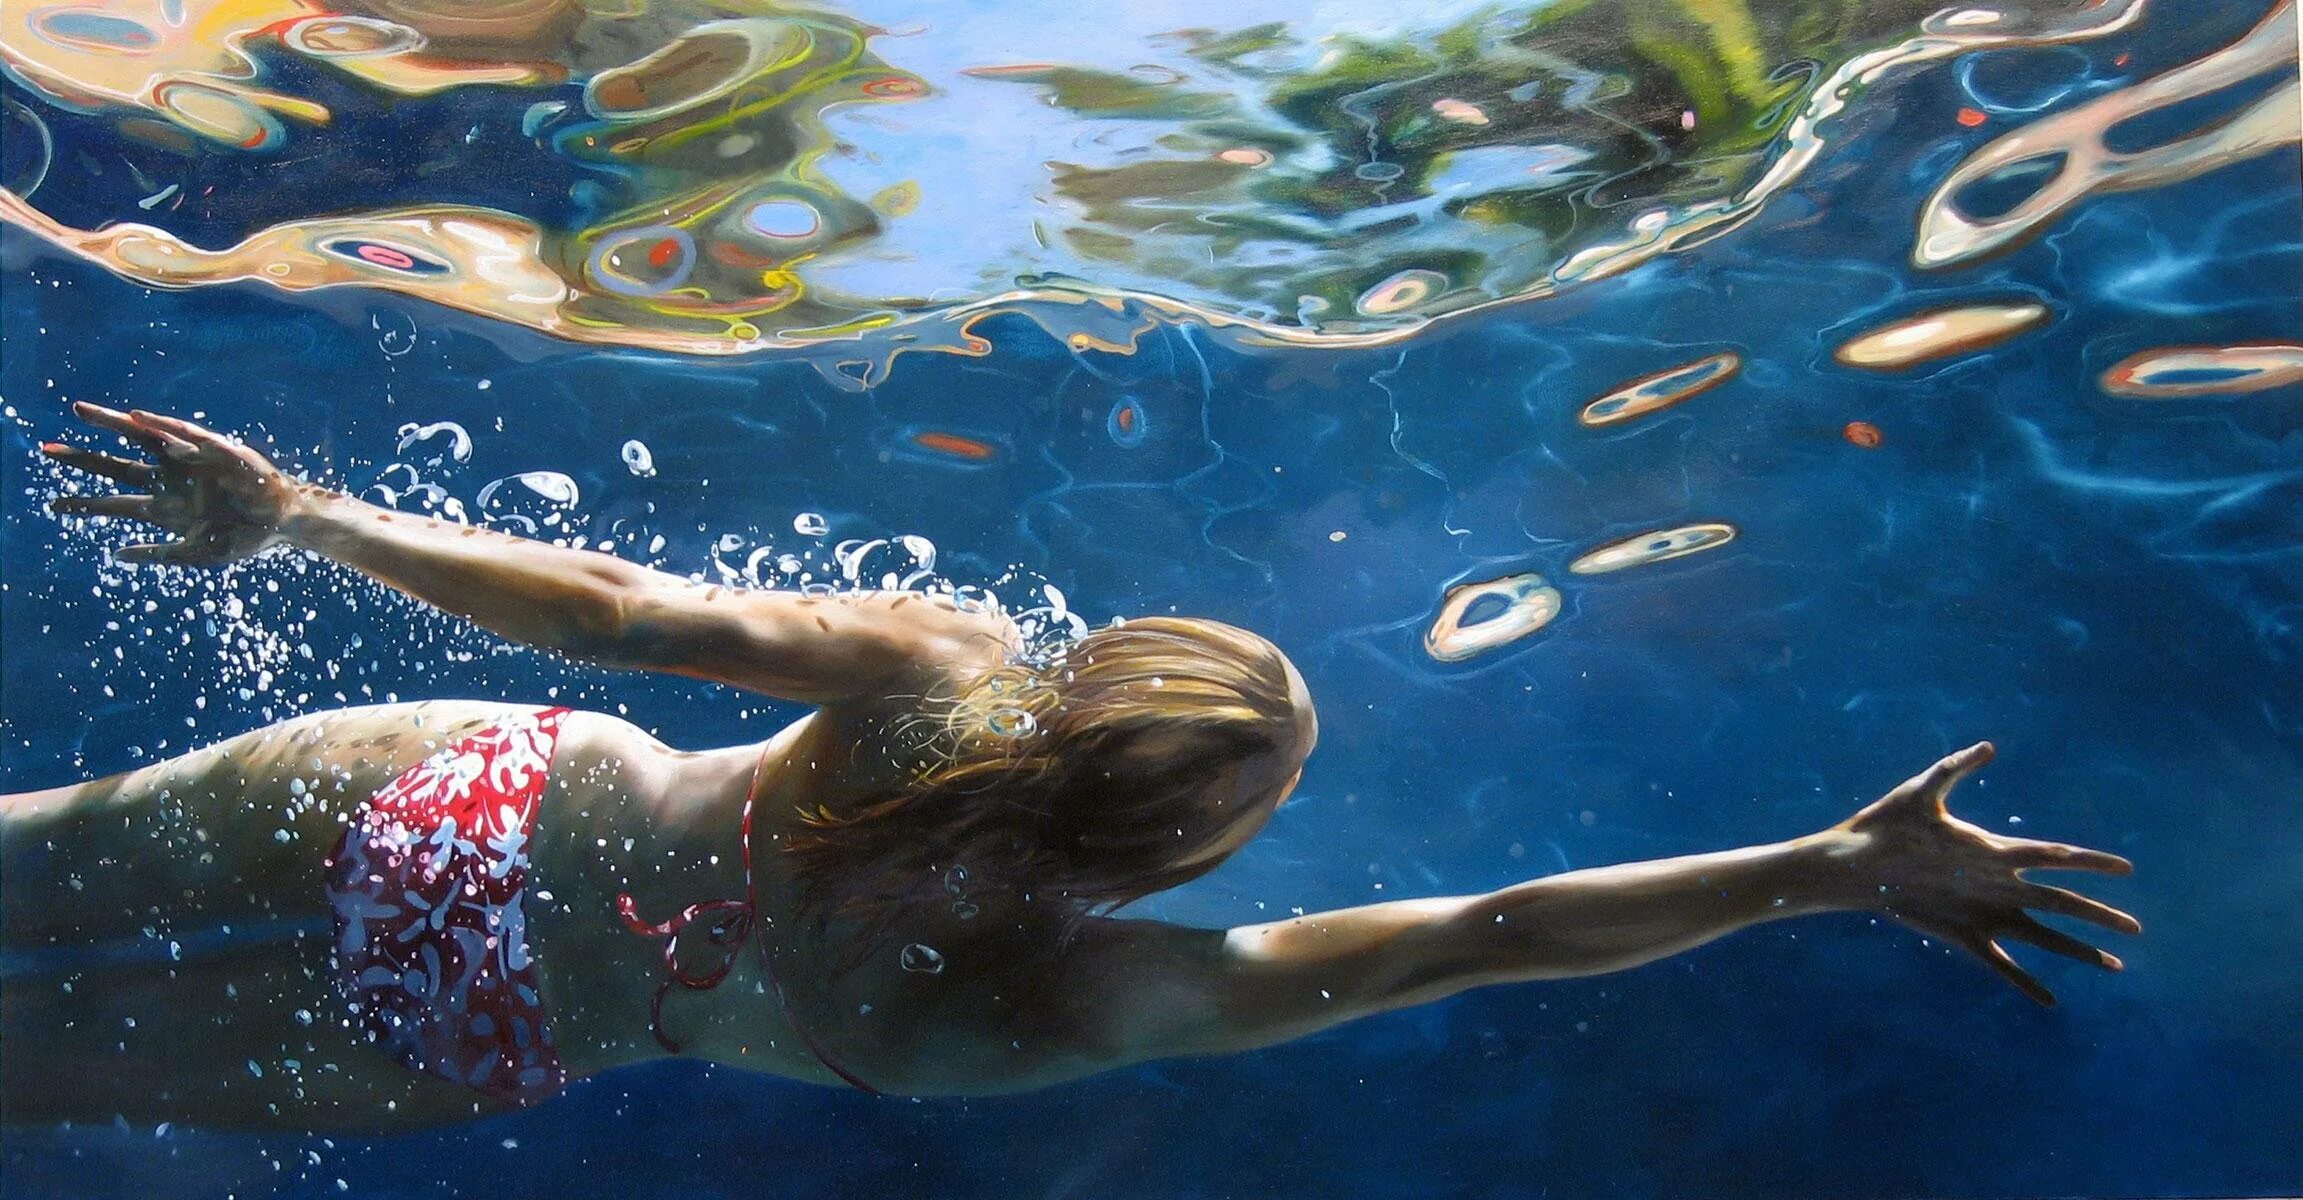 Реалистическая живопись Eric Zener. Металл плавает в воде